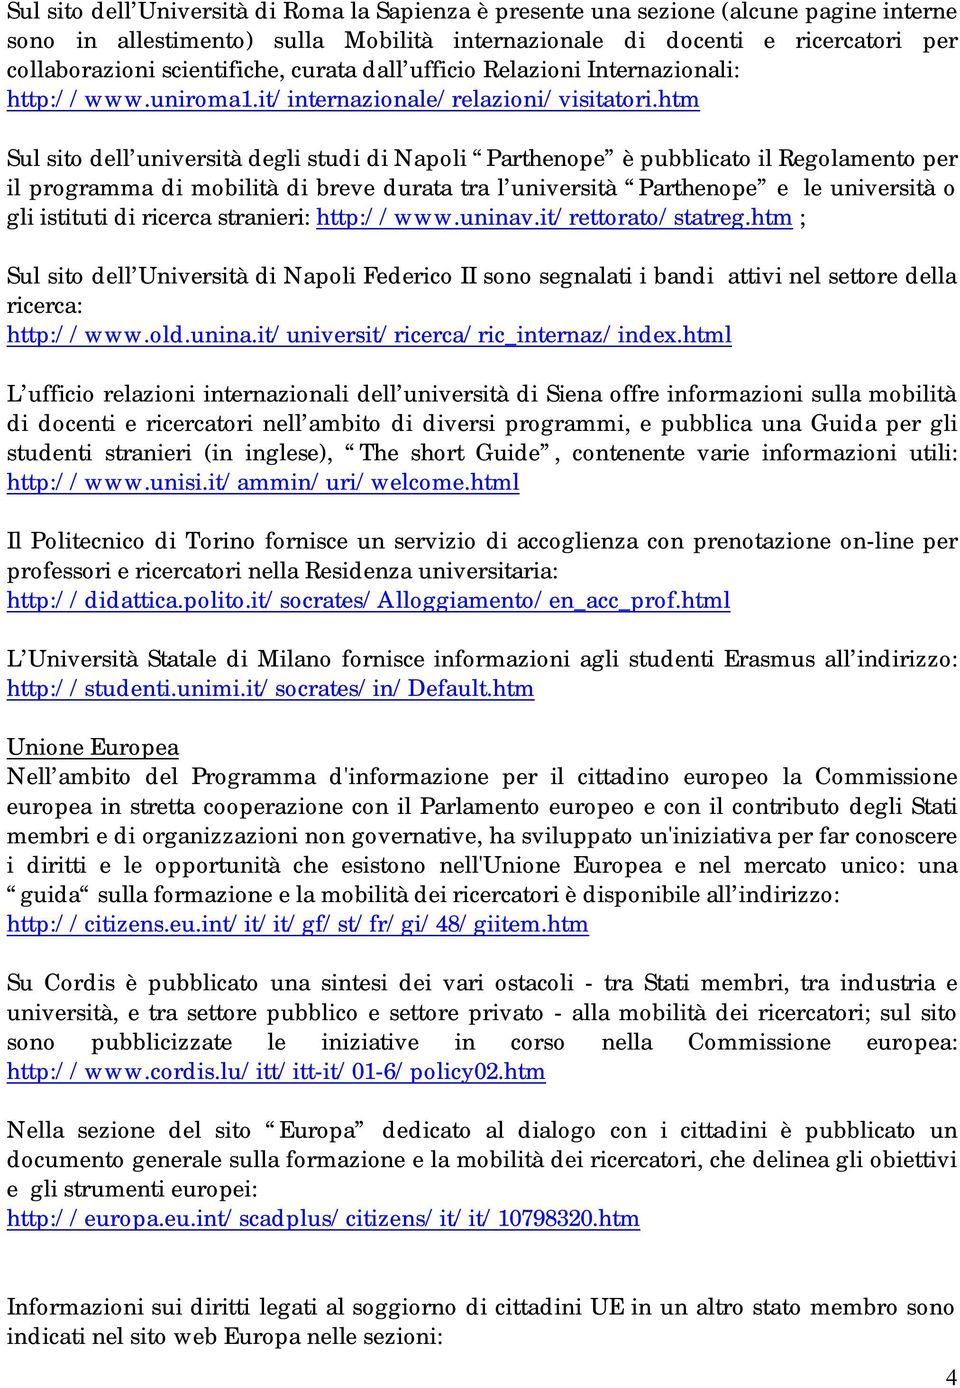 htm Sul sito dell università degli studi di Napoli Parthenope è pubblicato il Regolamento per il programma di mobilità di breve durata tra l università Parthenope e le università o gli istituti di